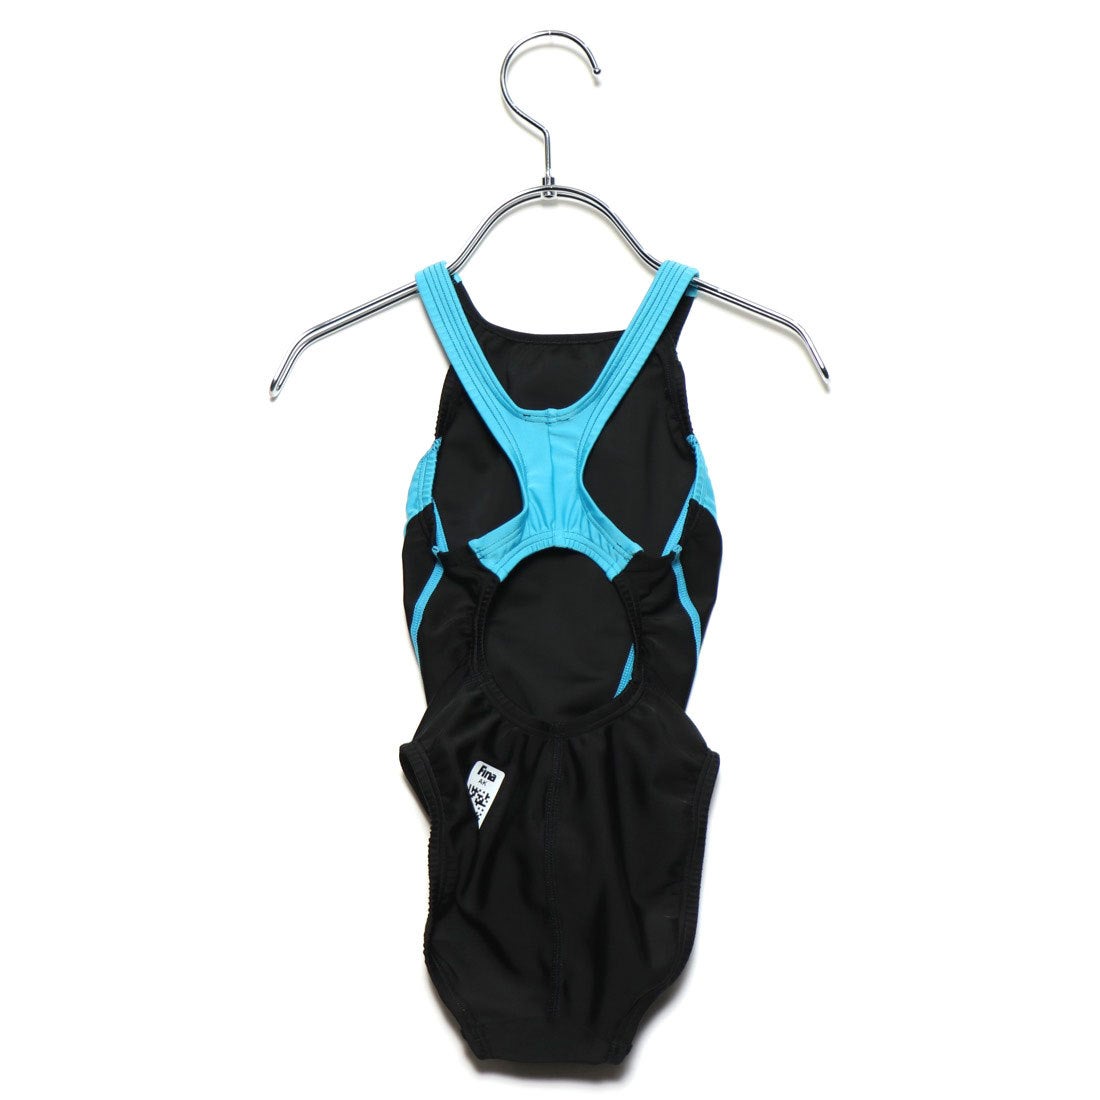 スピード ジュニア キッズ・子供 水泳 競泳水着 FLEX ZERO II Junior Suit フレックスゼロ2ジュニアエイムカットスーツ  SCG02206F SPEEDO 通販